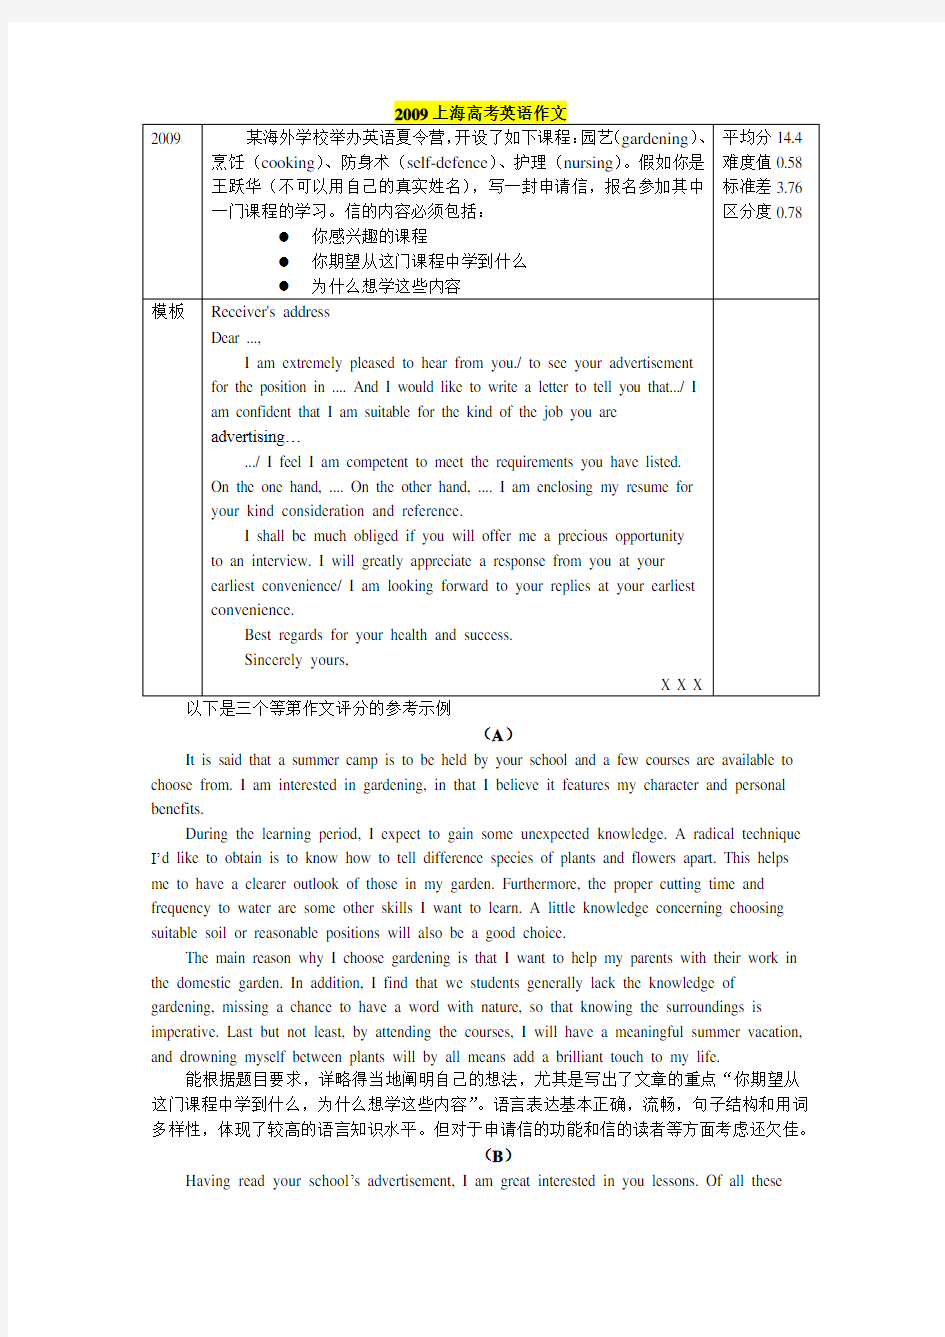 上海2009年高考英语作文训练与仿写